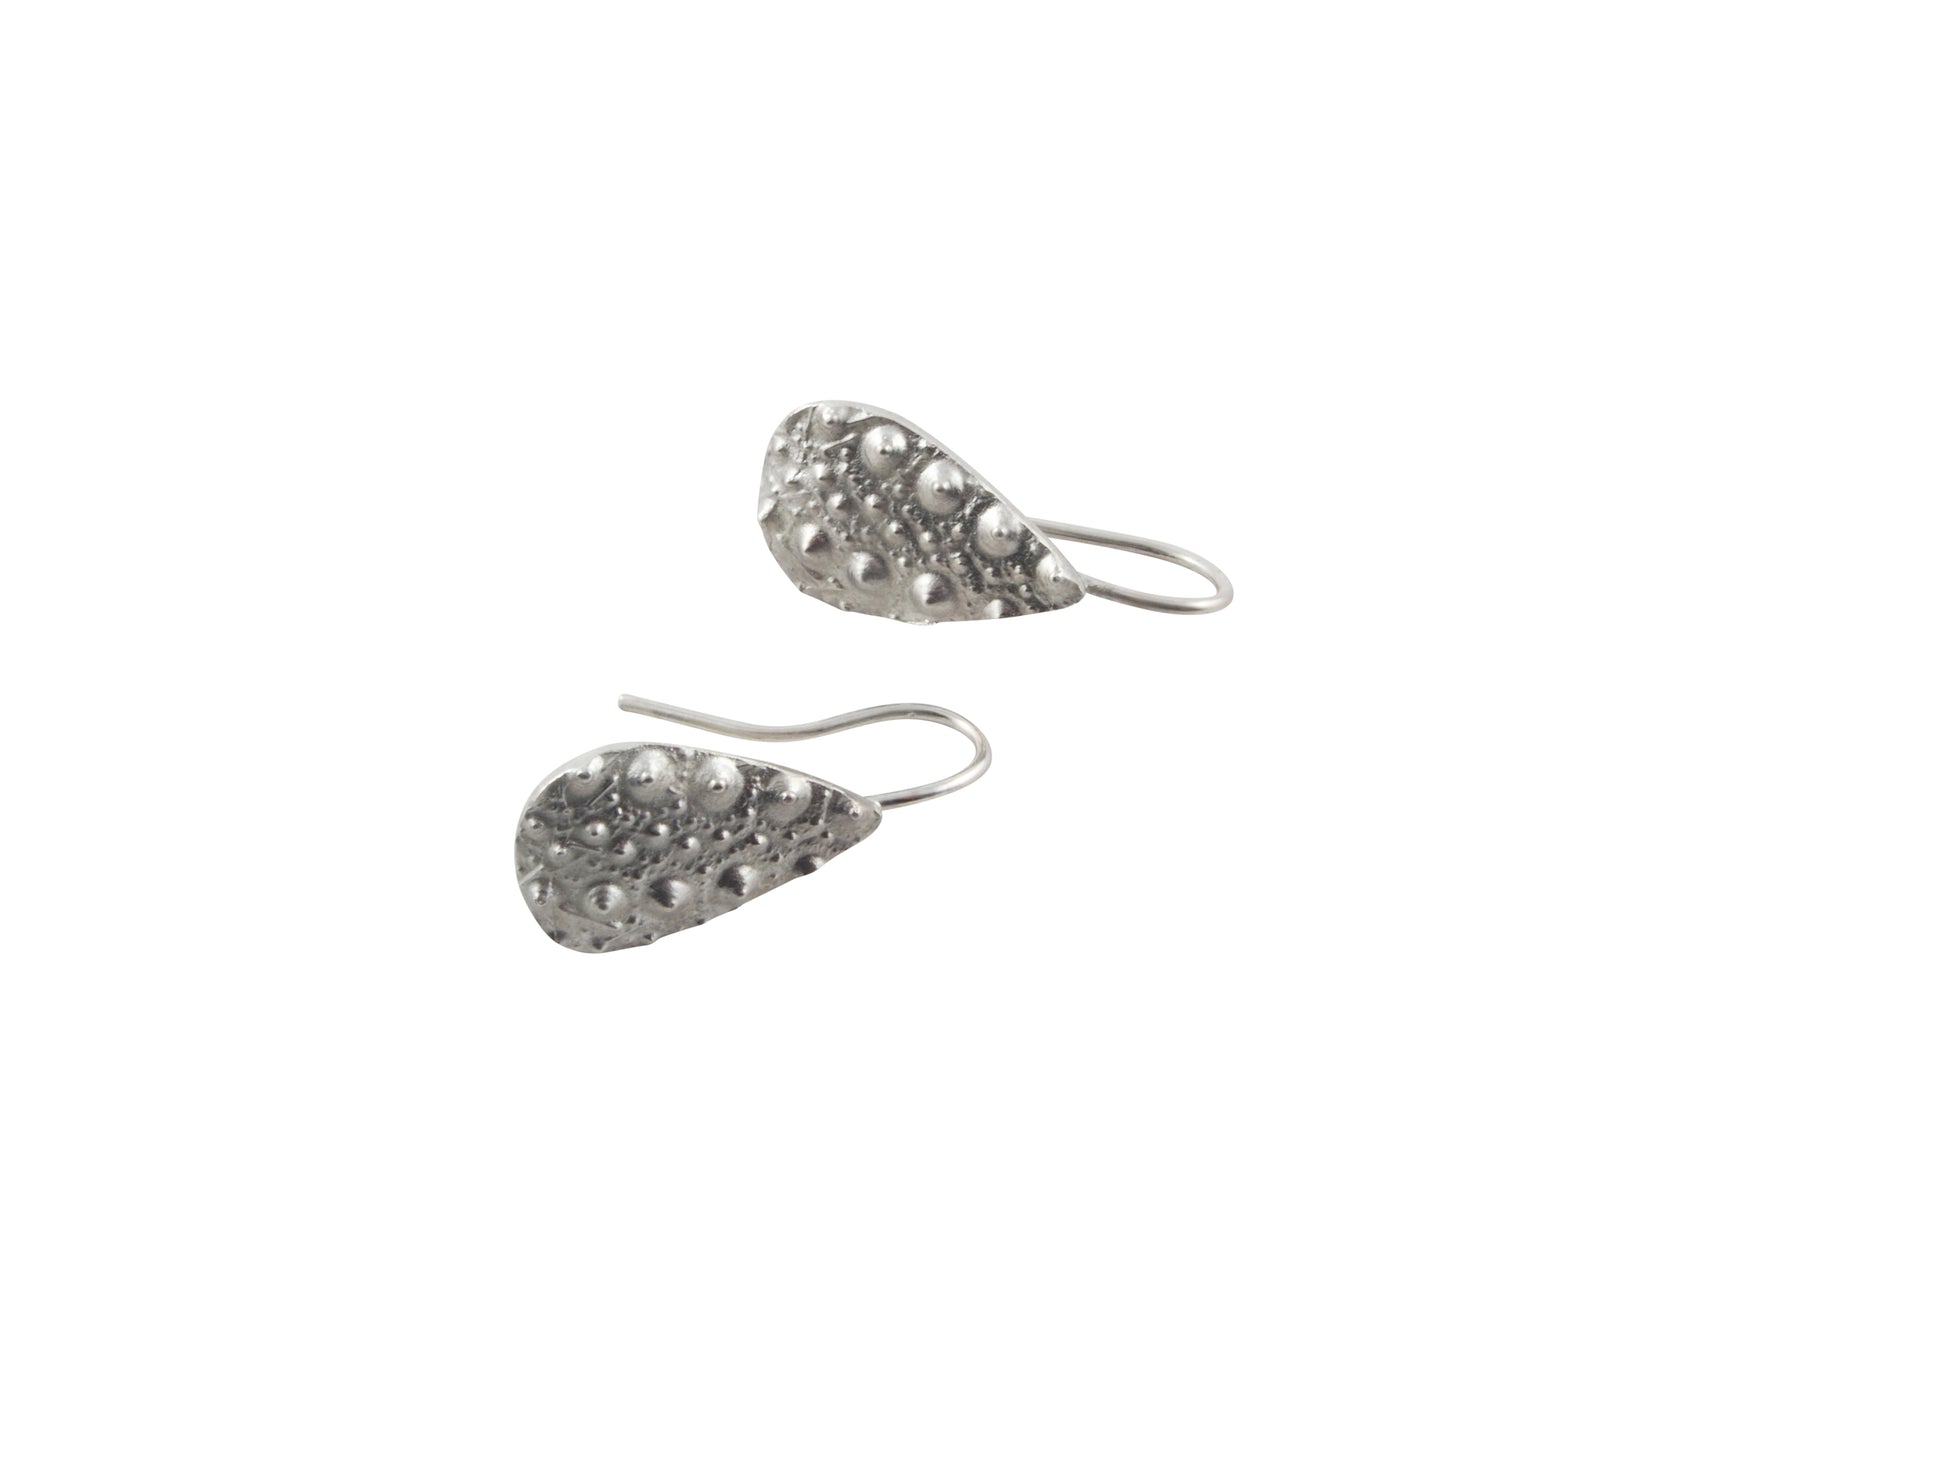 sea urchin earrings by janine combes 